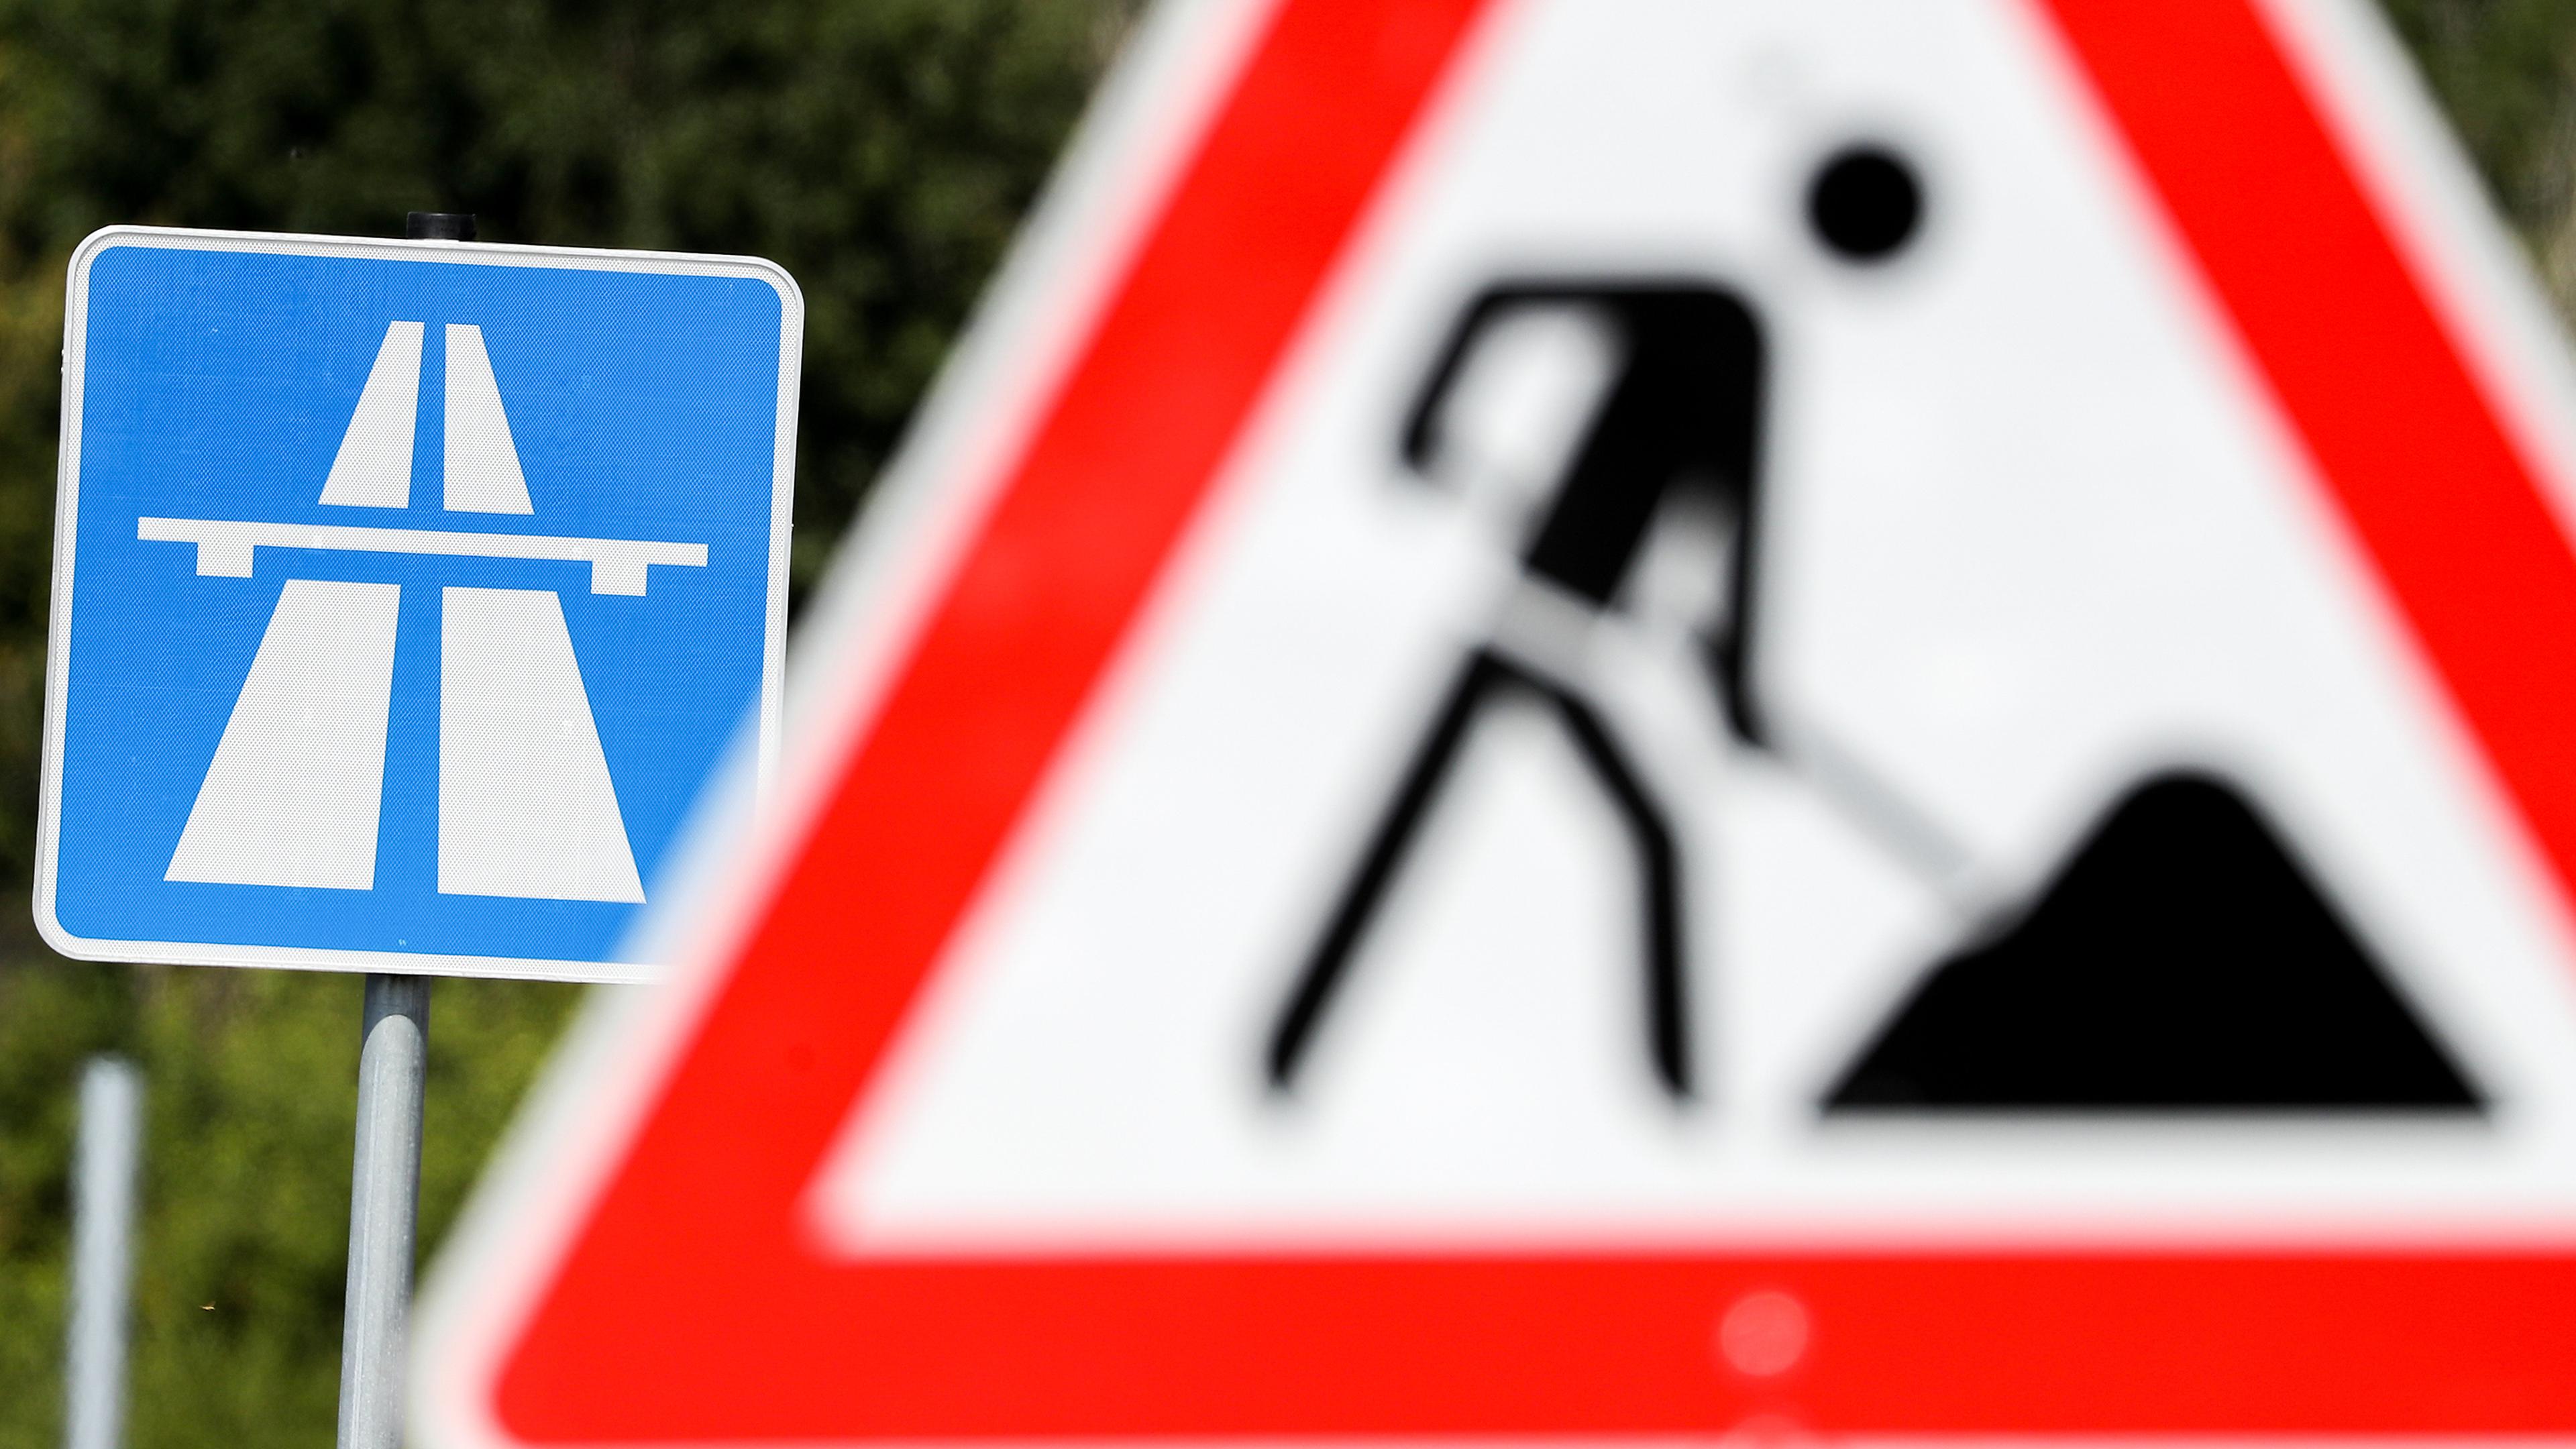 Autofahrer müssen sich für das kommende Wochenende auf Sperrungen und Umleitungen auf der A4 einstellen.